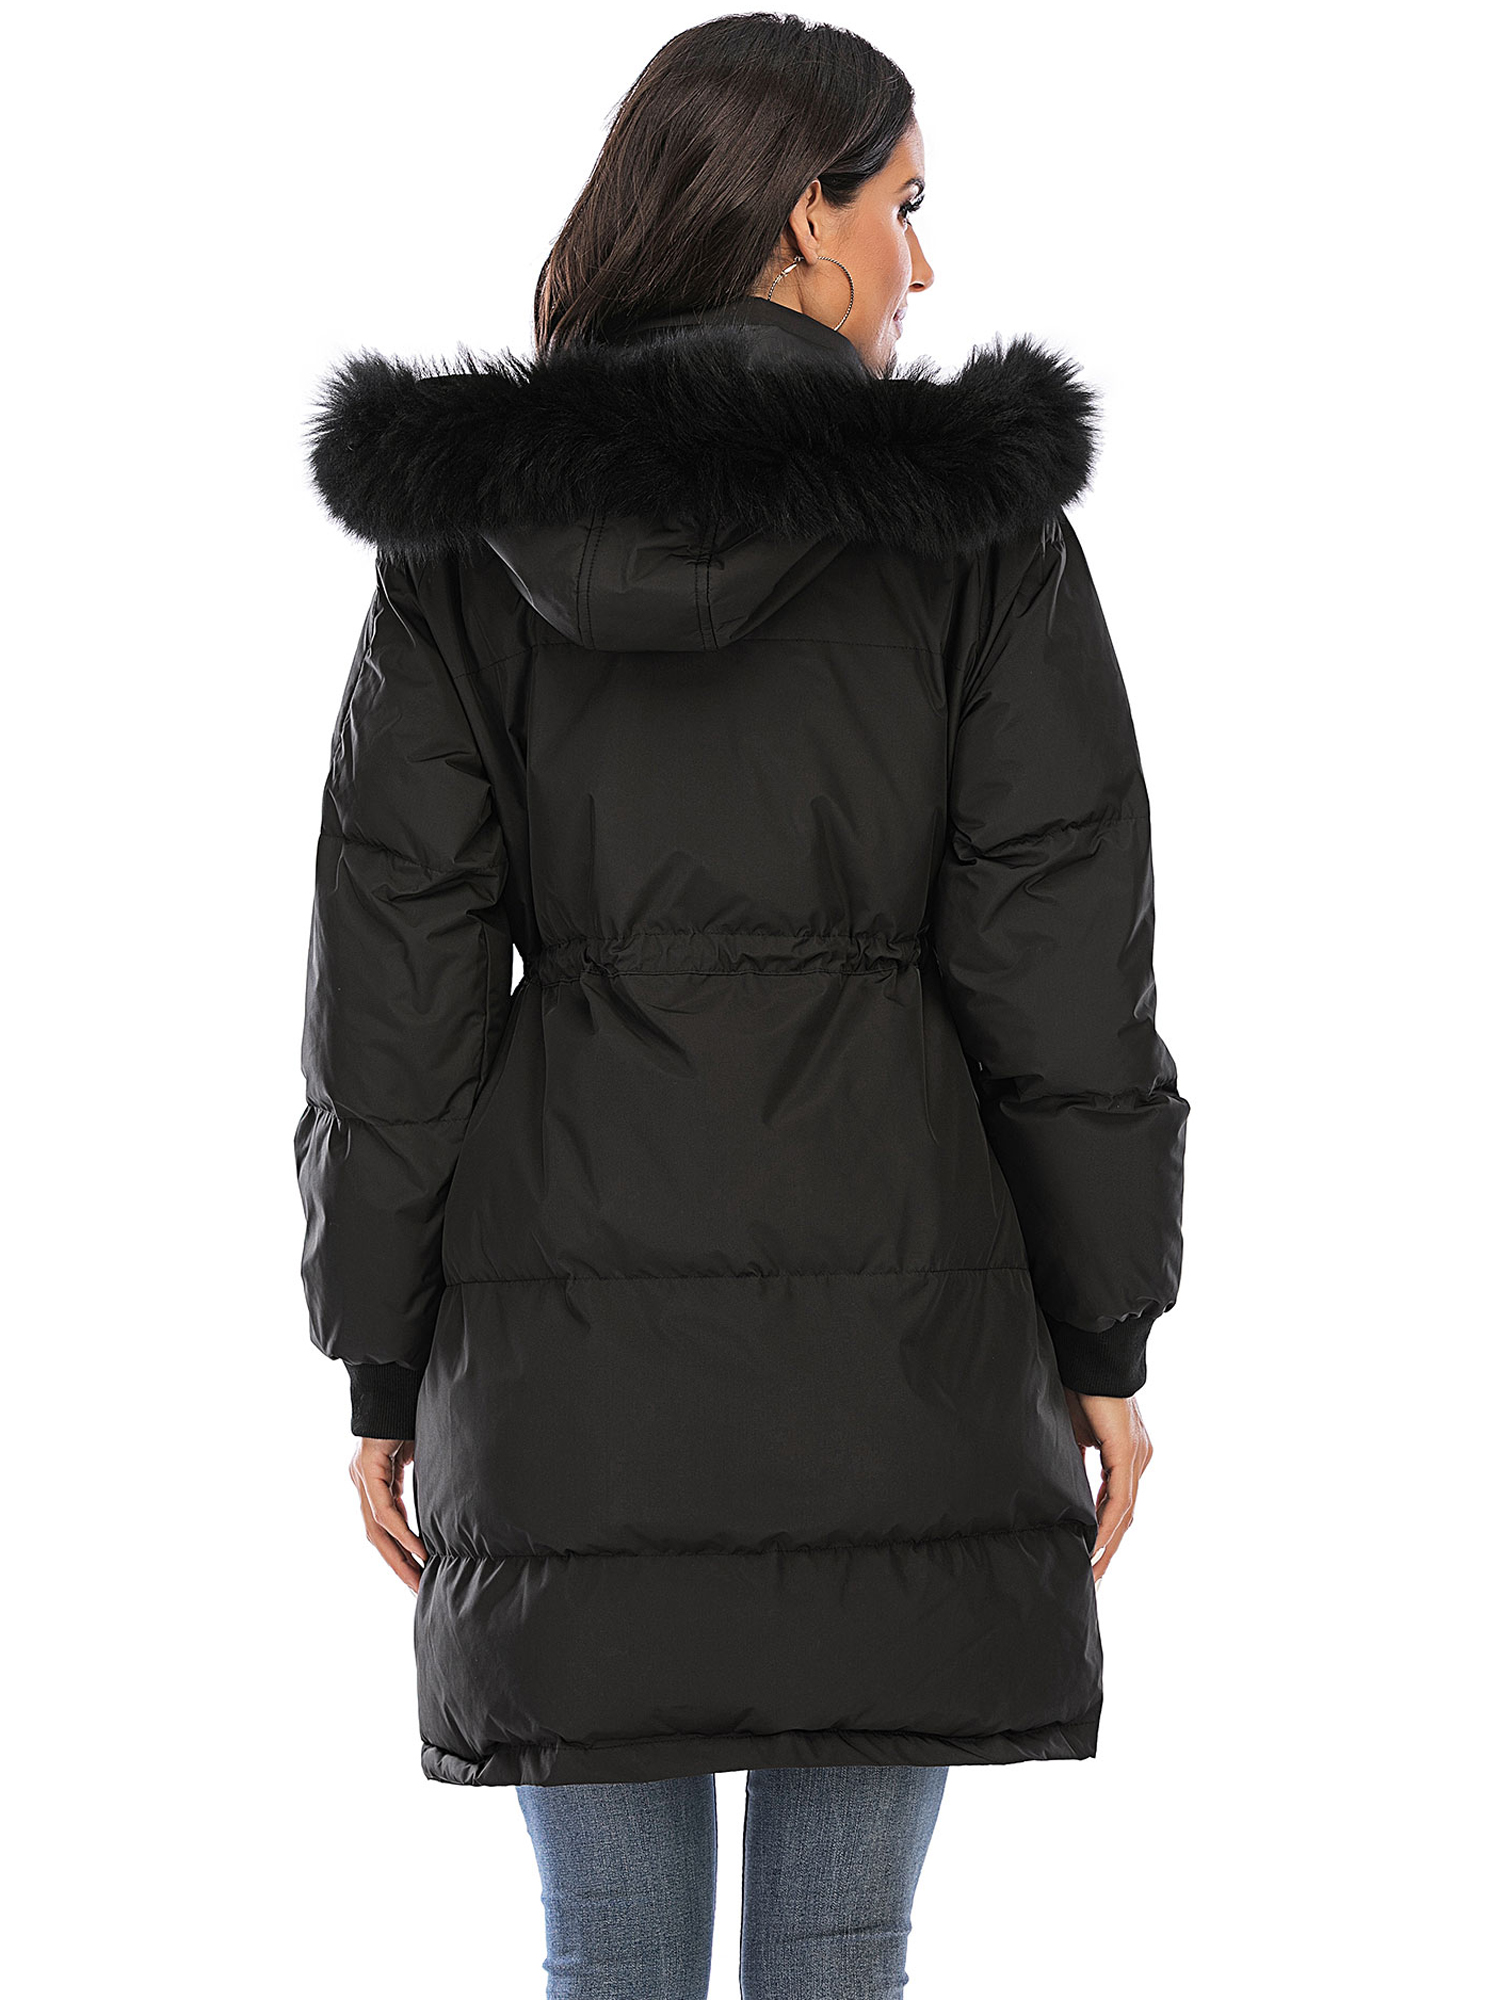 LELINTA Women Winter Plus Size Long Hoodie Coat Warm Hooded Jacket Zip Parka Overcoats Raincoat Active Outdoor Trench Coat - image 4 of 7